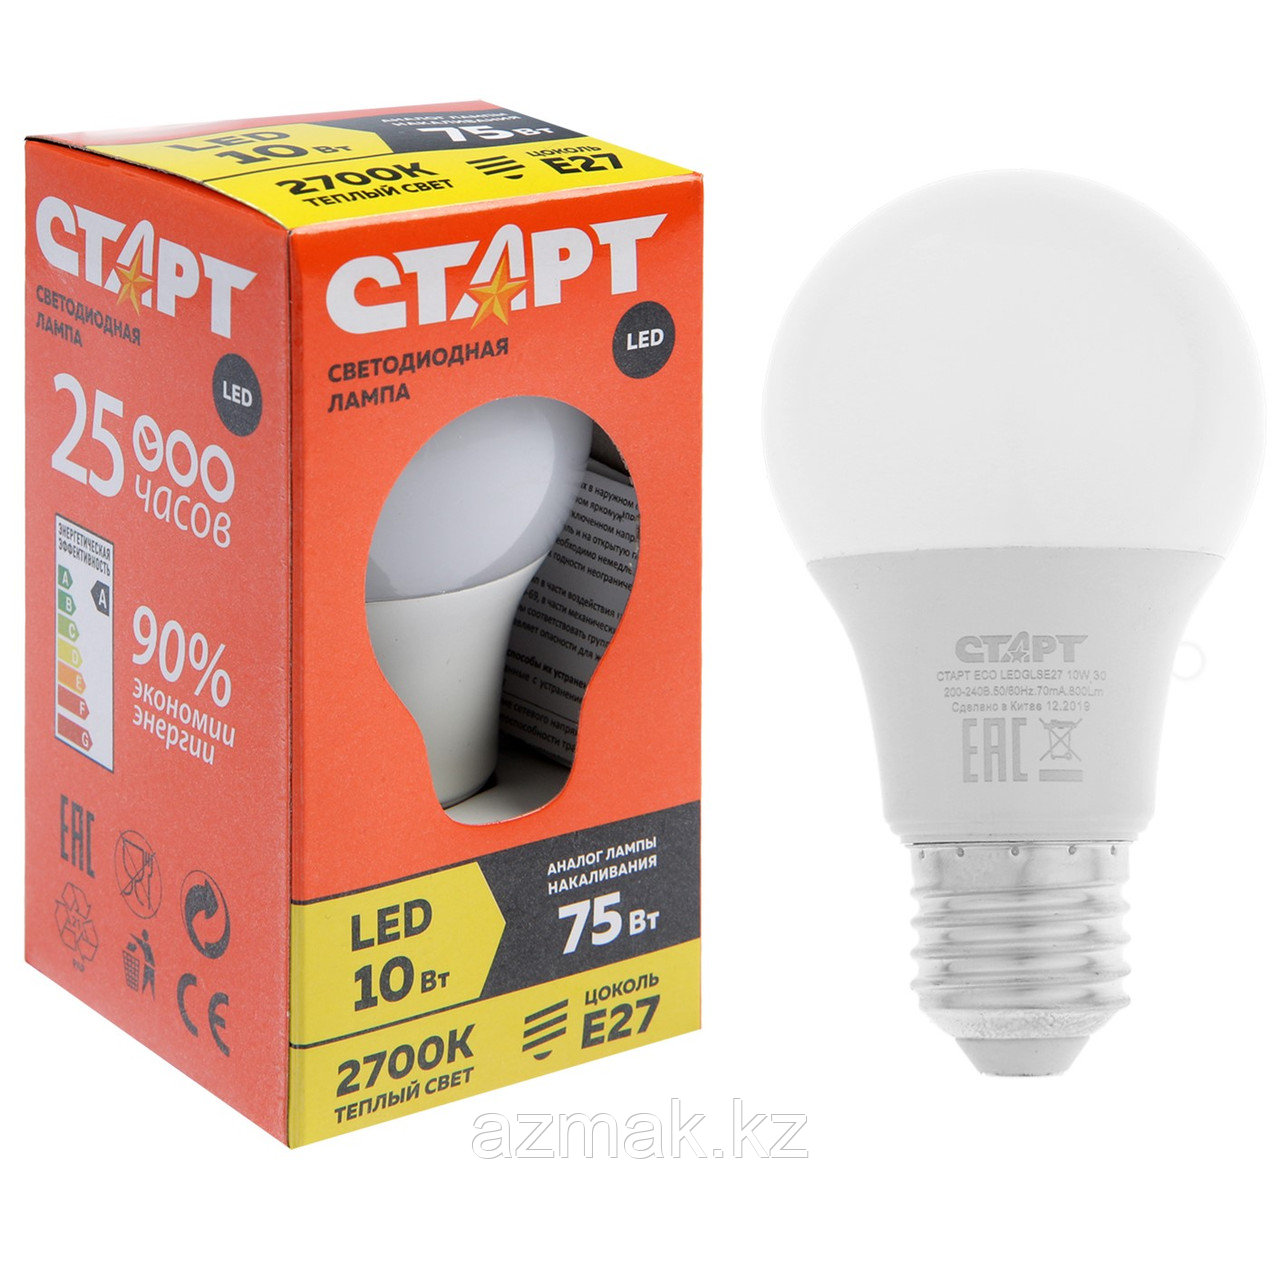 Светодиодная лампа СТАРТ LED GLS E27 10W 30